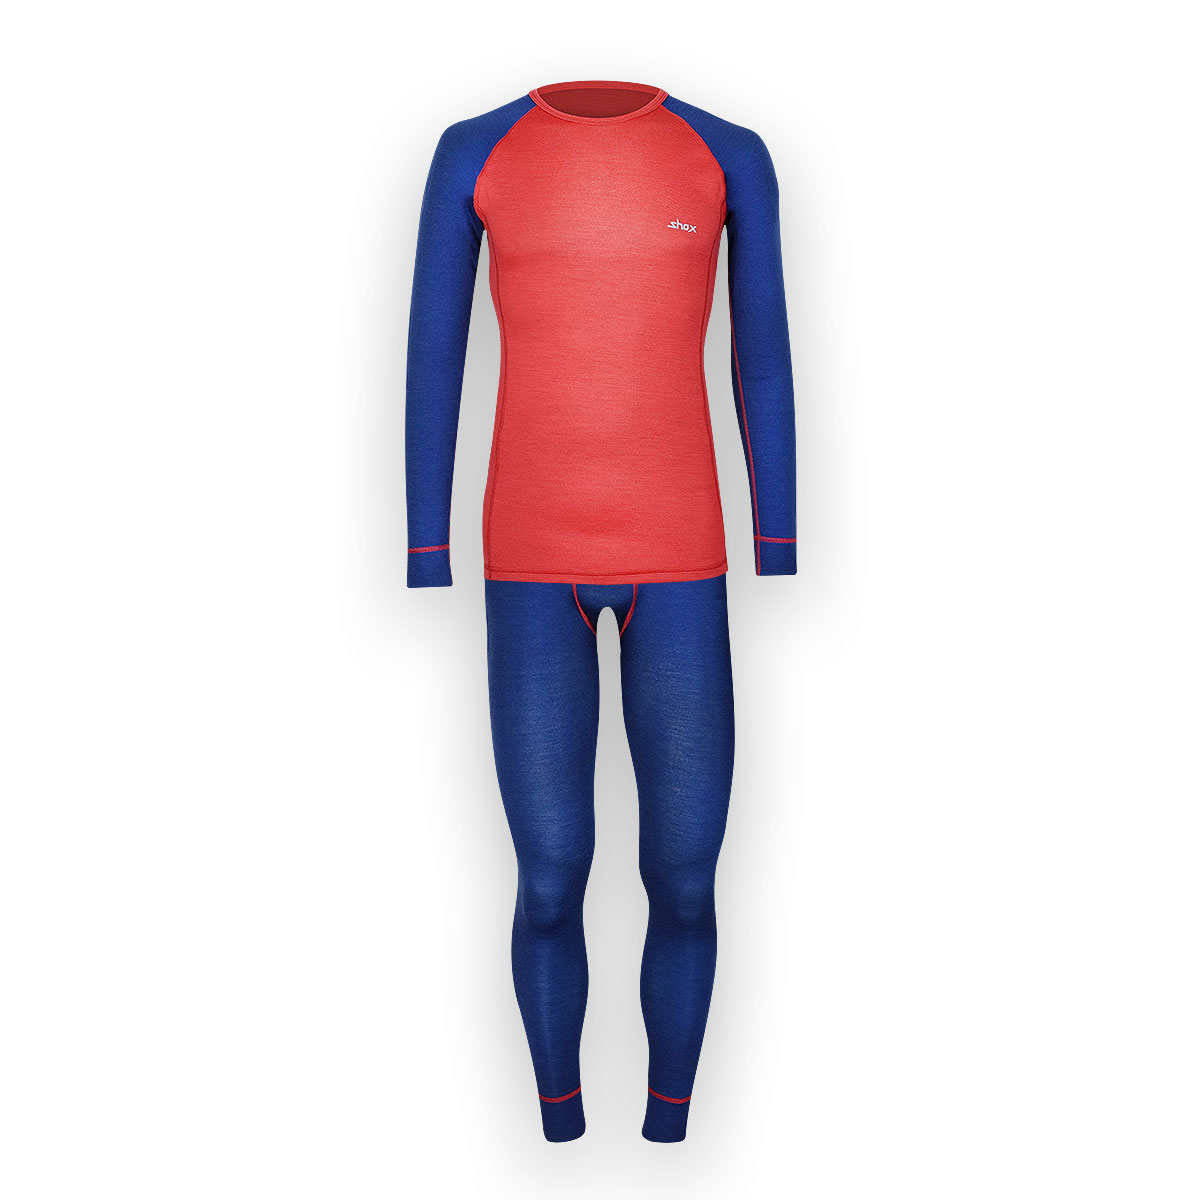 Pánsky merino set - tričko a spodky - tmavo modrá / červená, XXL - Large